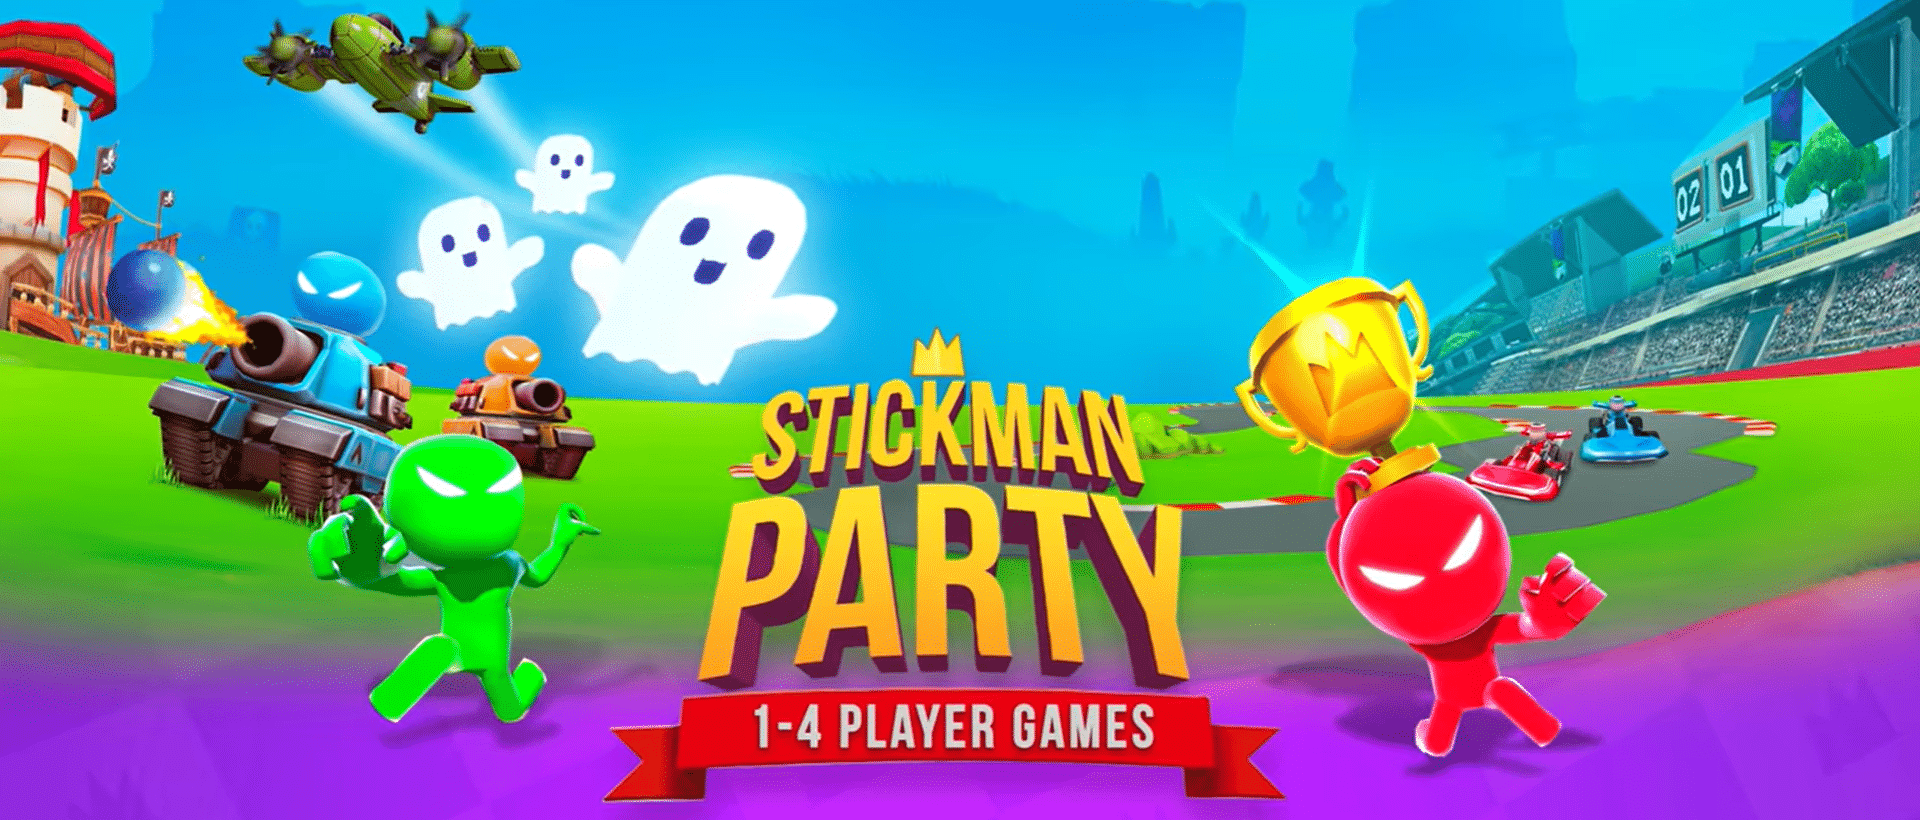 Бесплатная игра 1234. Игры. Игра на четверых. Stickman Party. Игру игру на четверых.